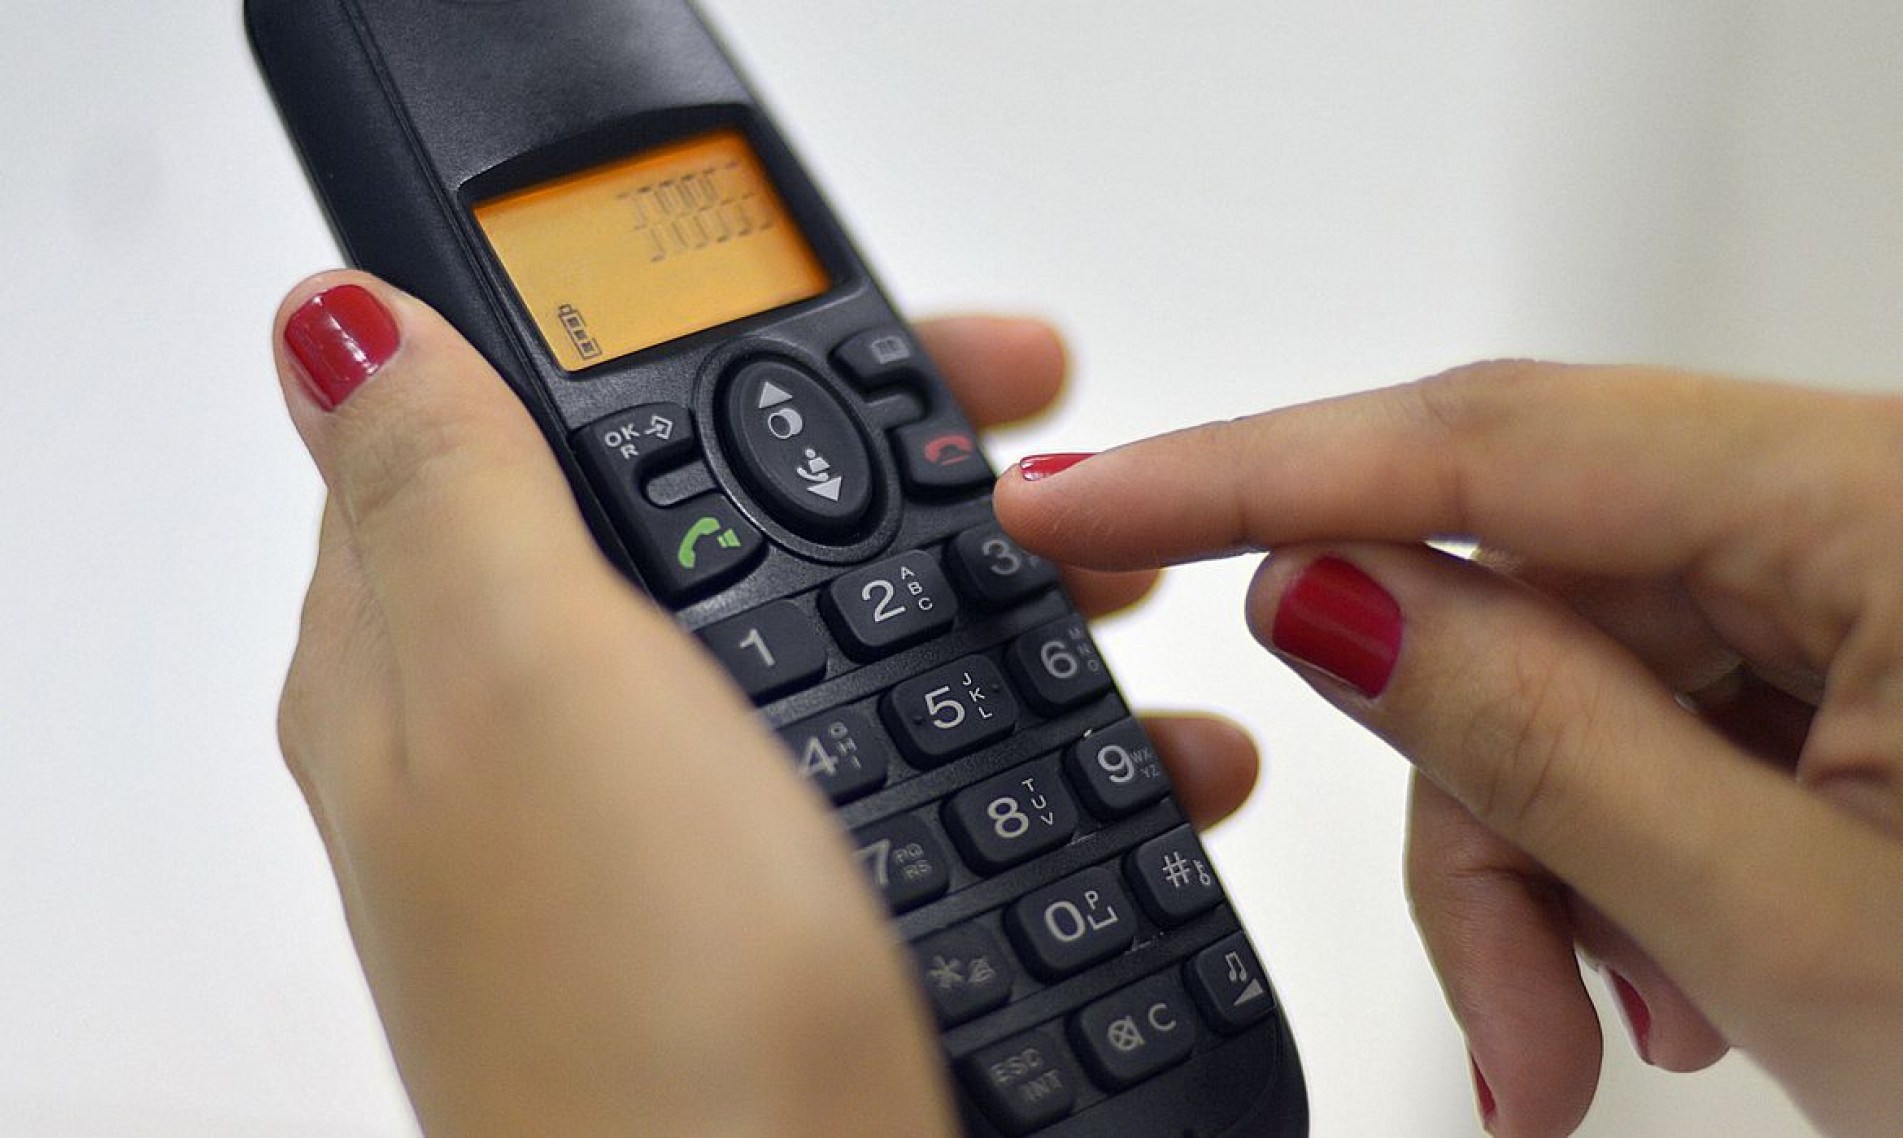 Brasília - Ligação de telefone fixo para celular ficará 13% mais barata em março. A Anatel publicou hoje (24), no Diário Oficial, as novas tarifas de remuneração de redes móveis (Marcello Casal Jr./Agência Brasil)